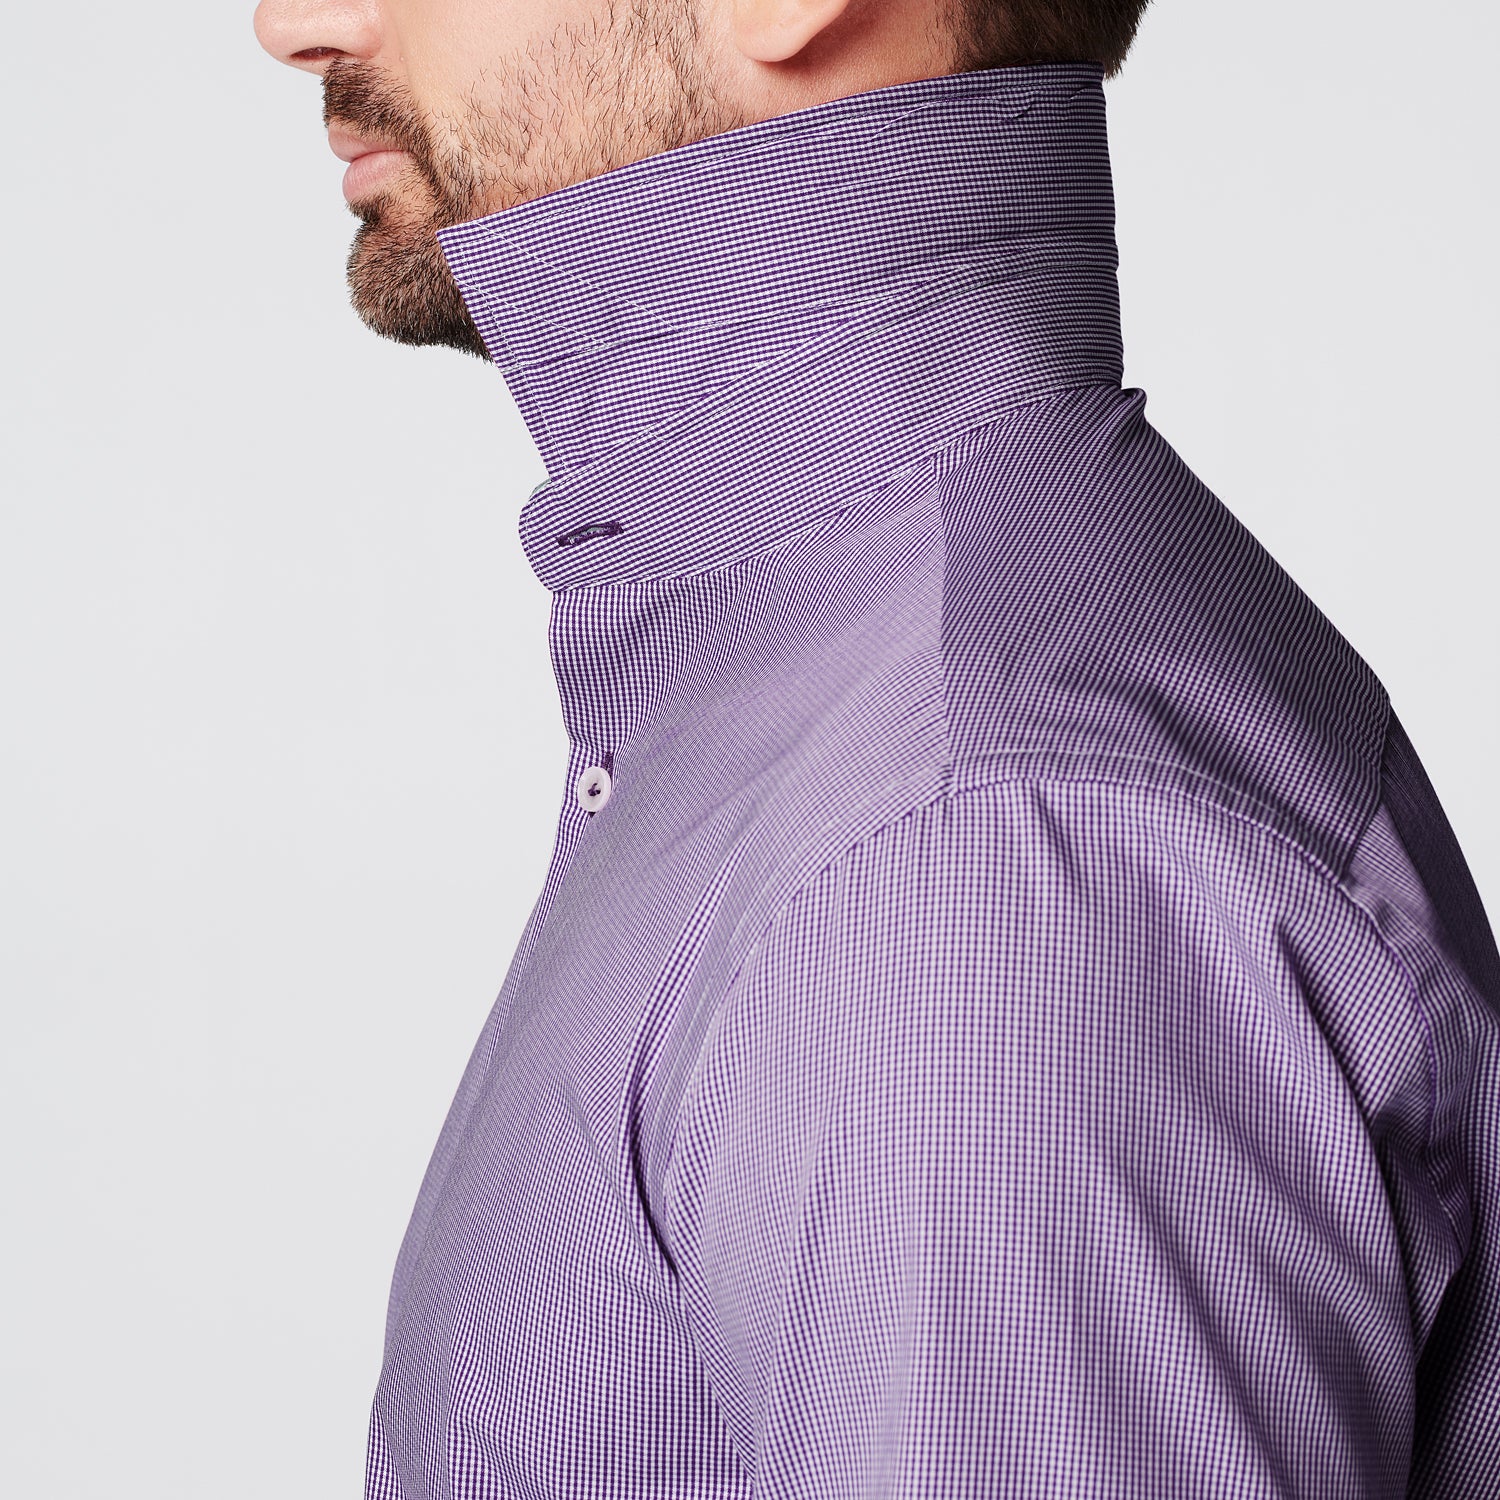 SKOT Fashion Shirt - Slim Fit - Checkered Purple -